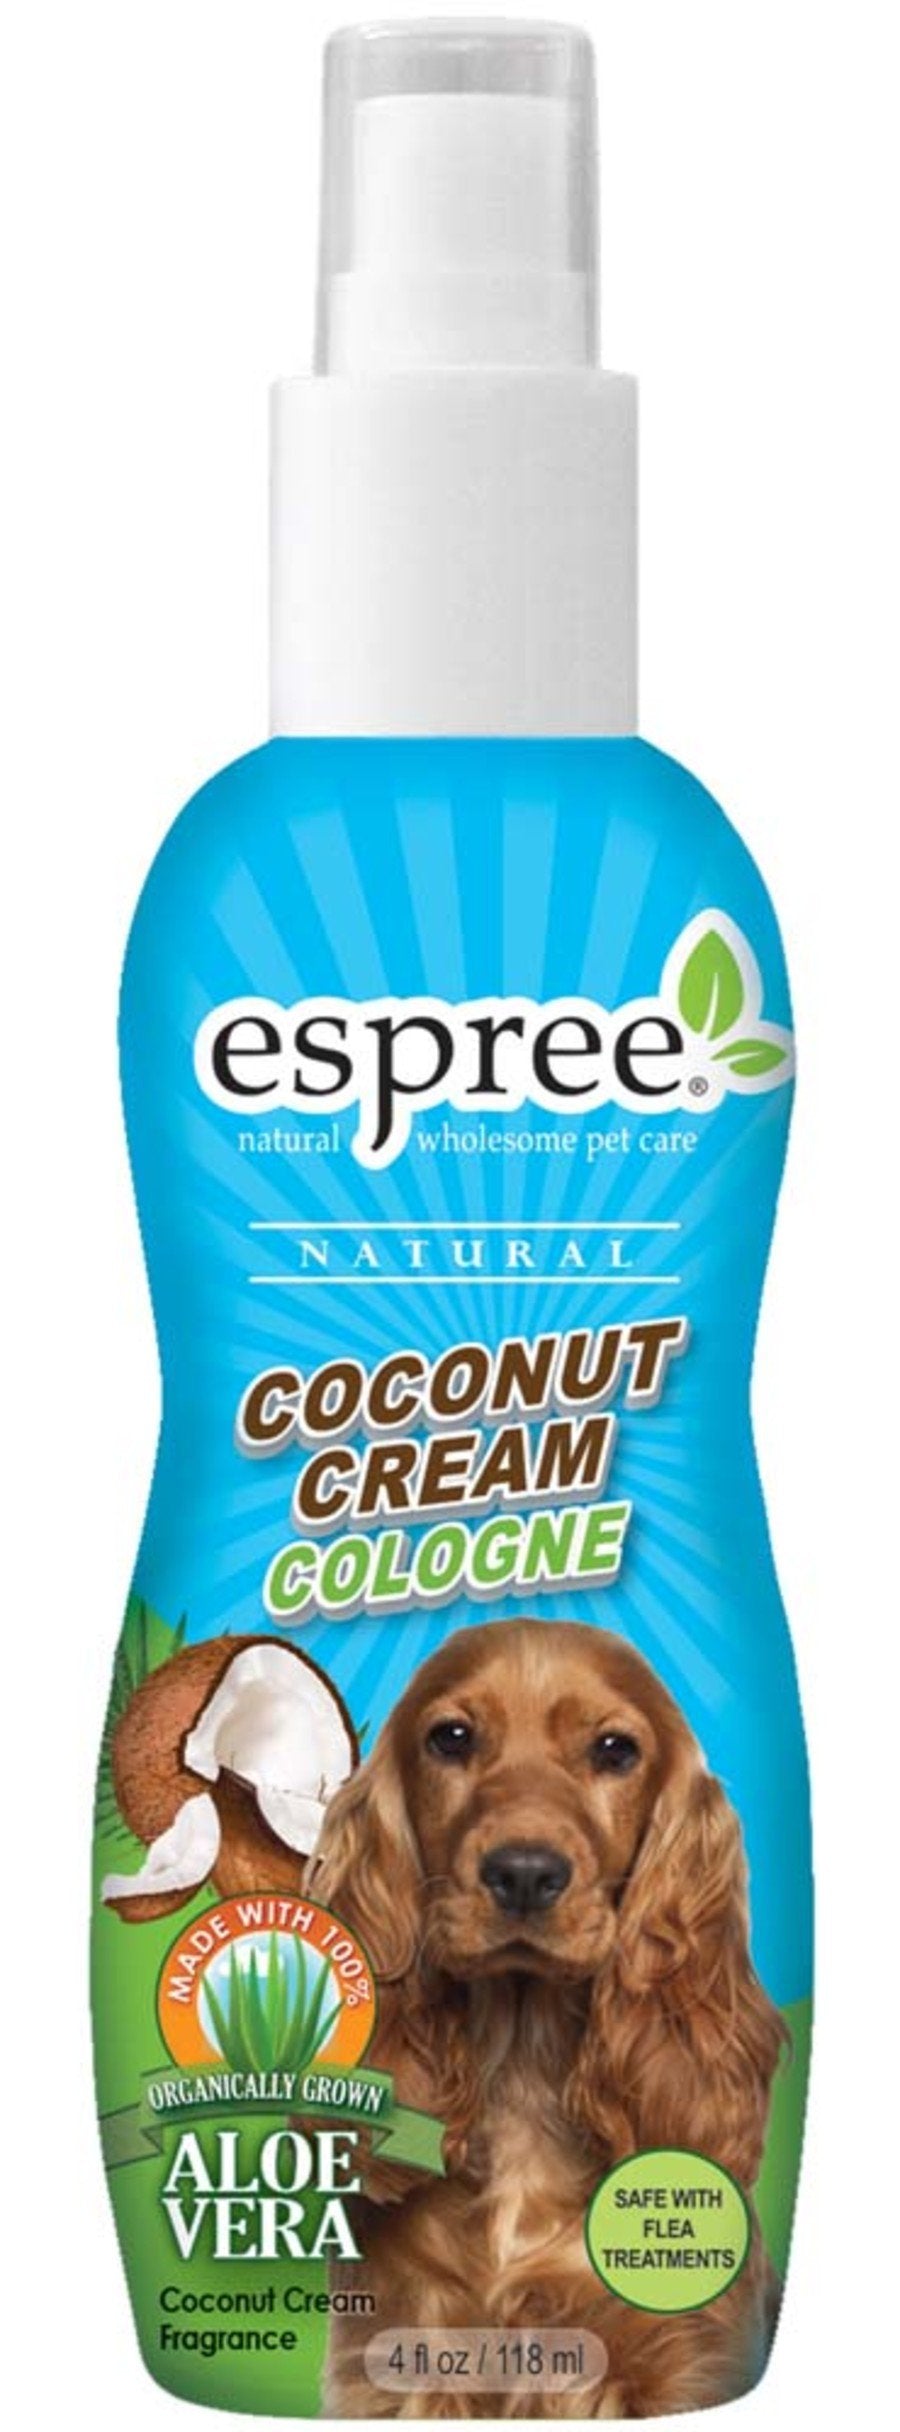 Espree Natural Coconut Cream Cologne Spray for Dogs, 4 oz